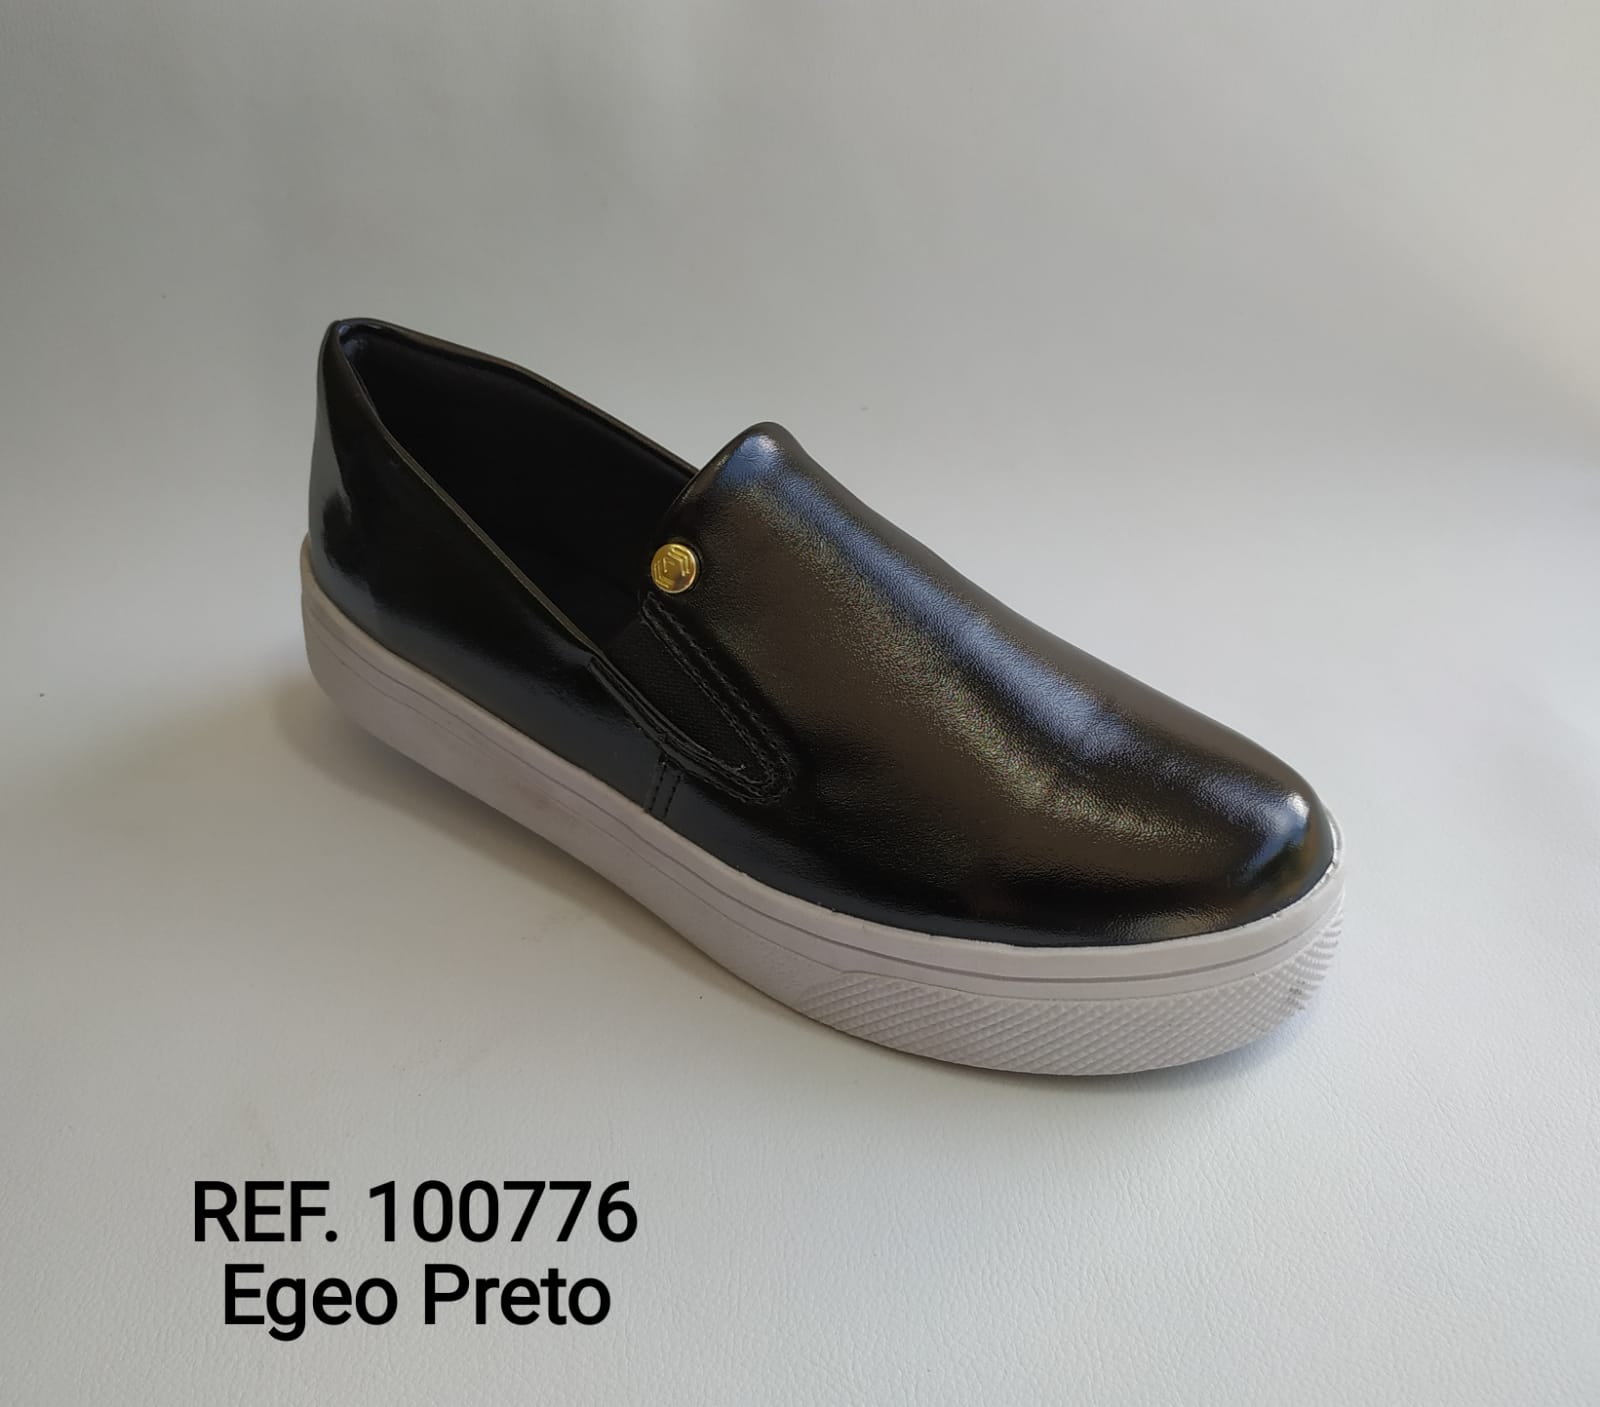 Ref. 100776 Egeo Preto